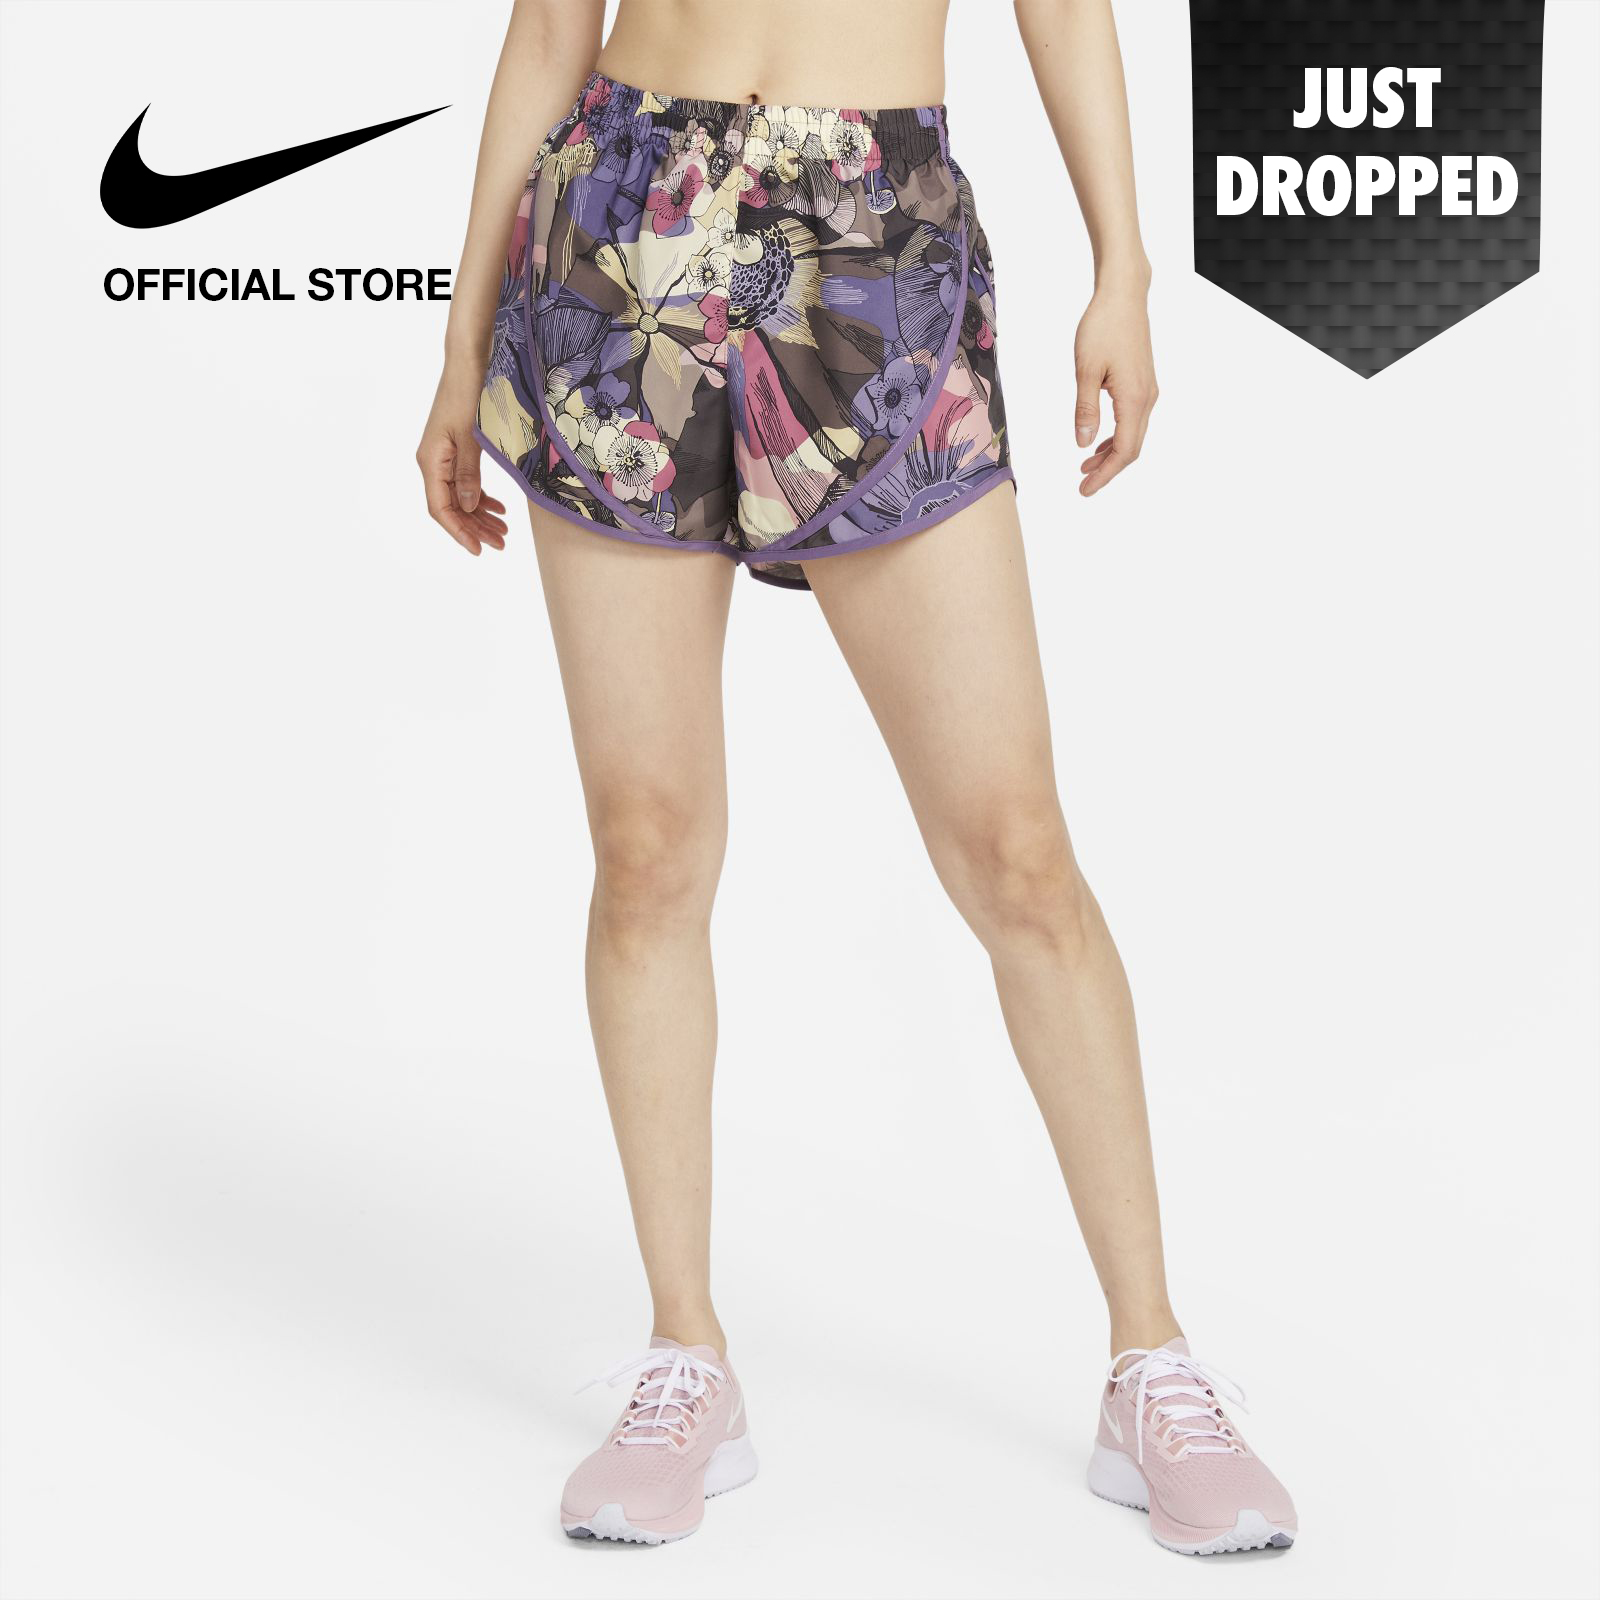 Nike Women's Tempo Femme Running Shorts - Ironstone ไนกี้ กางเกงขาสั้นวิ่งผู้หญิง เทียมโป้ เฟมเม่ - สีไออ้อนสโตน